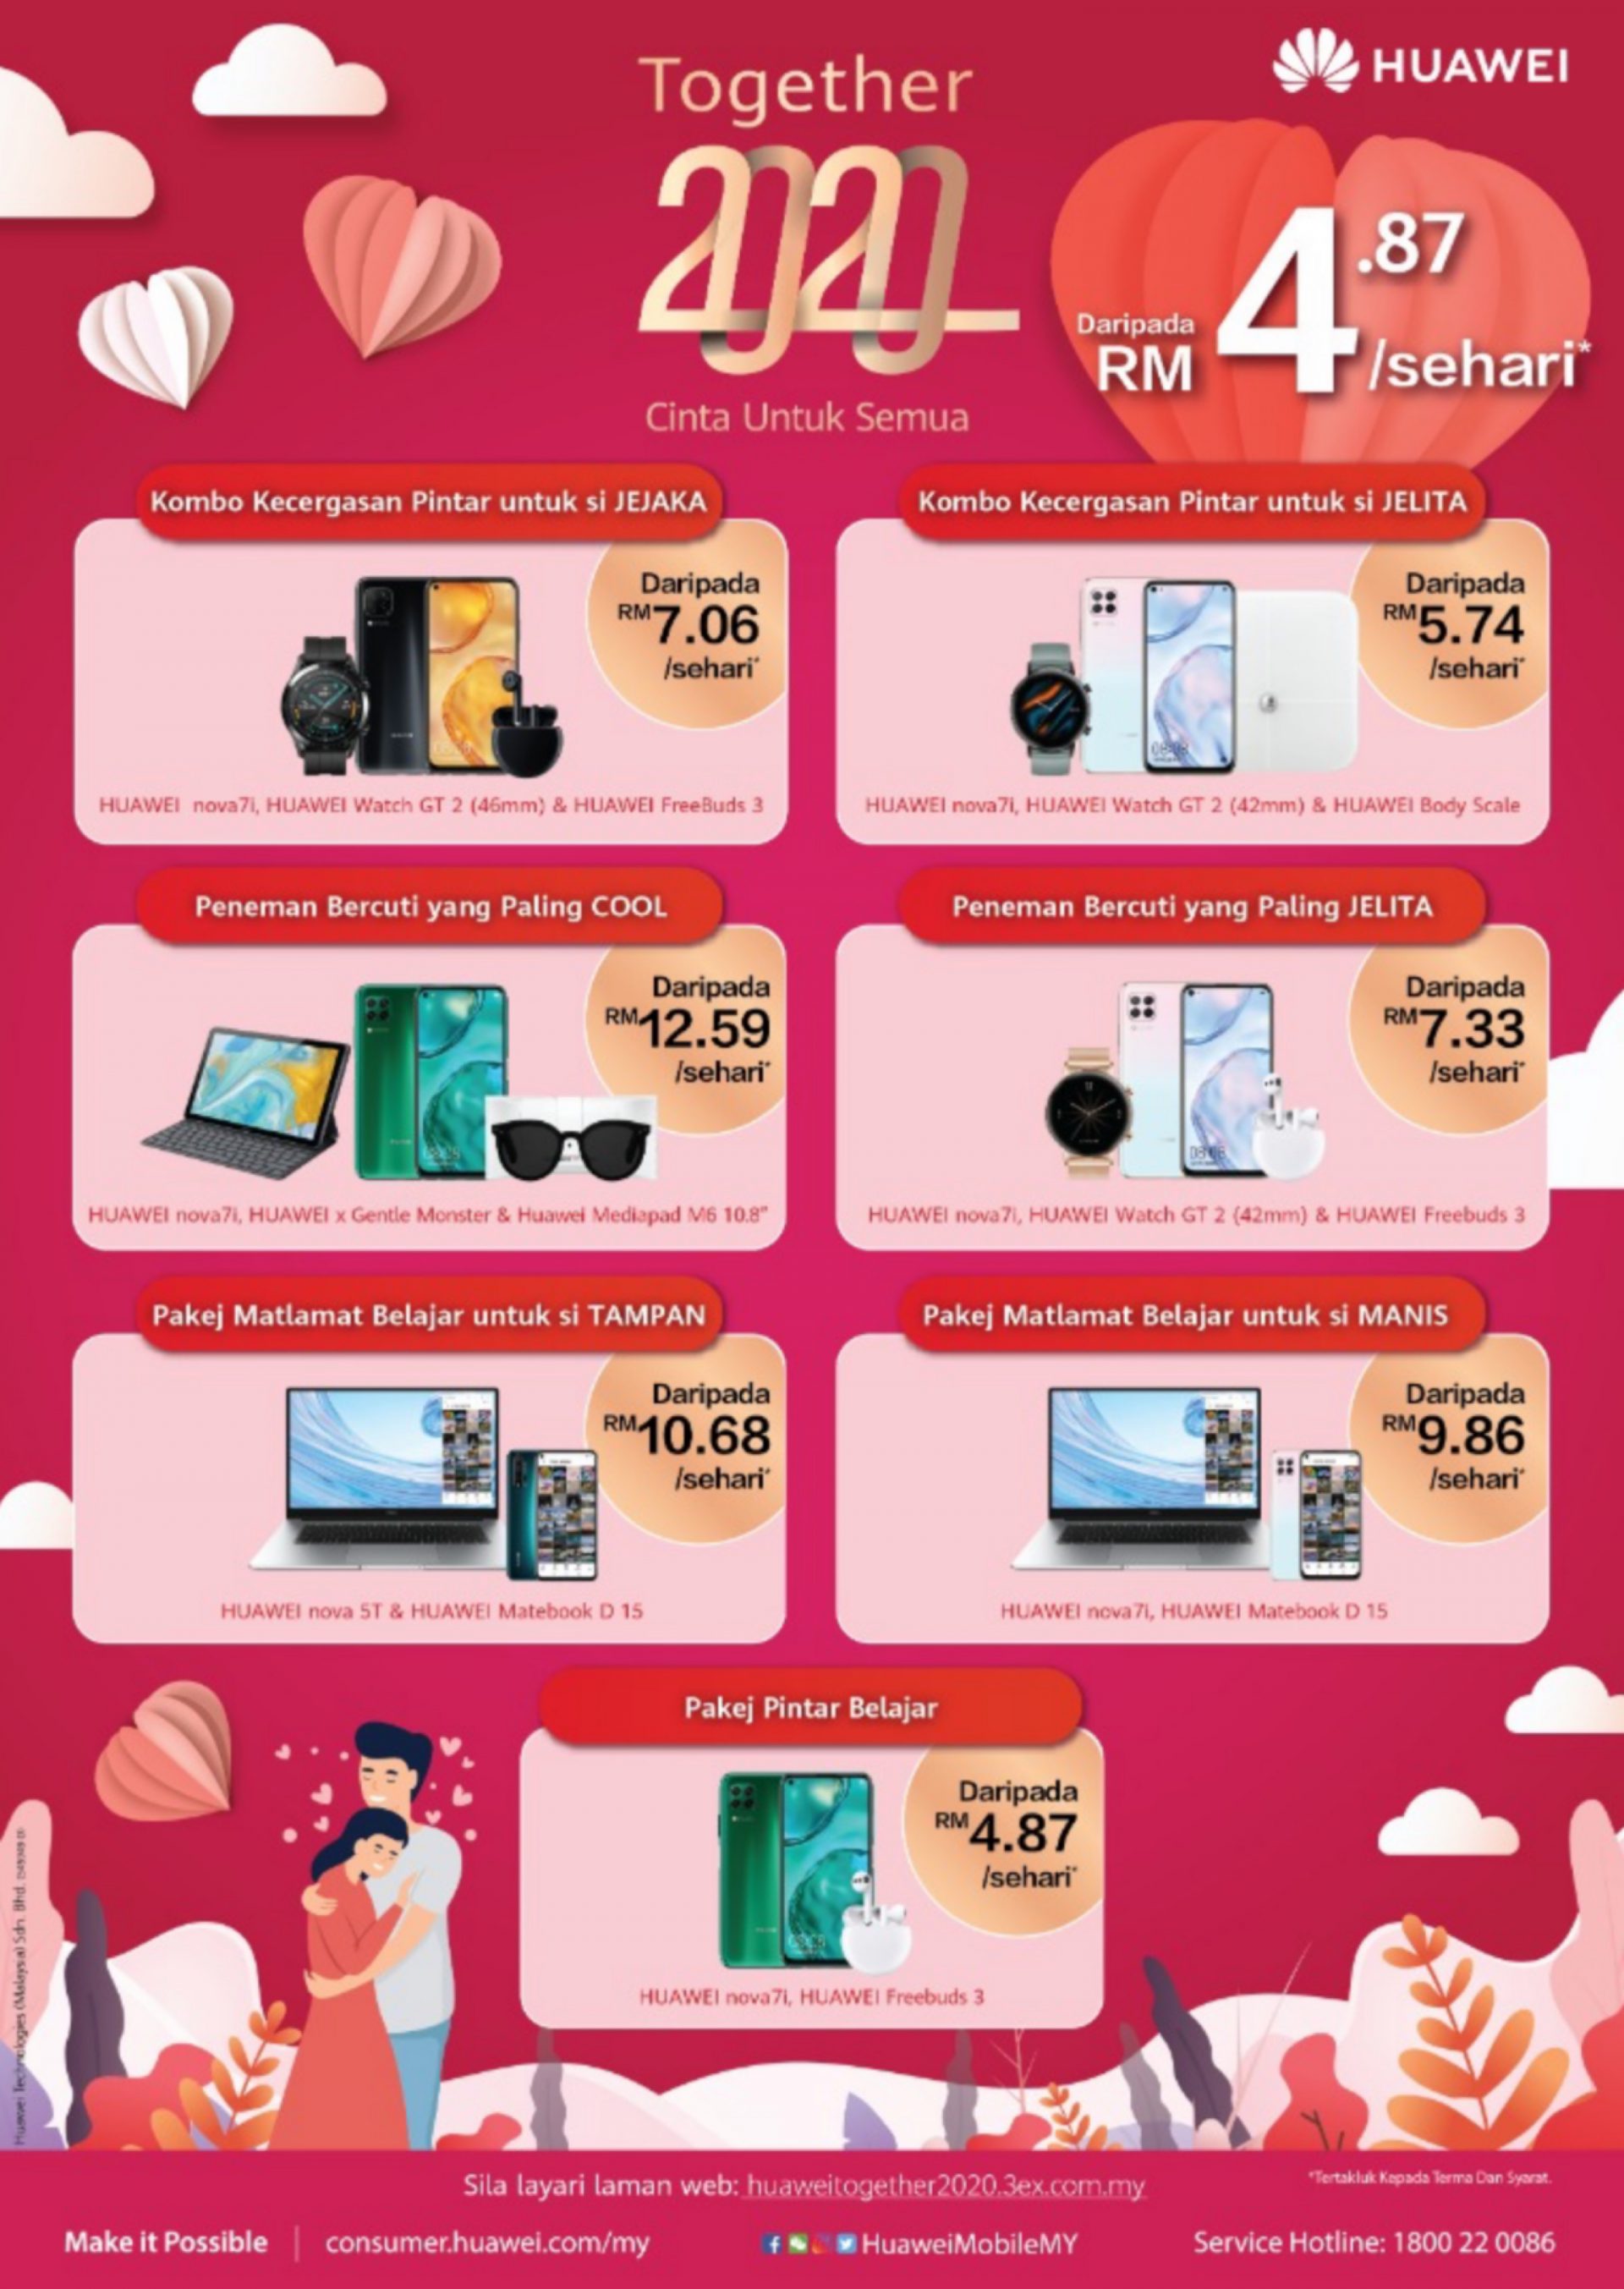 Hadiah Terbaik Untuk Pasangan Anda &#8211; Huawei Nova 7i Dengan Tawaran Hebat Serendah RM2.14